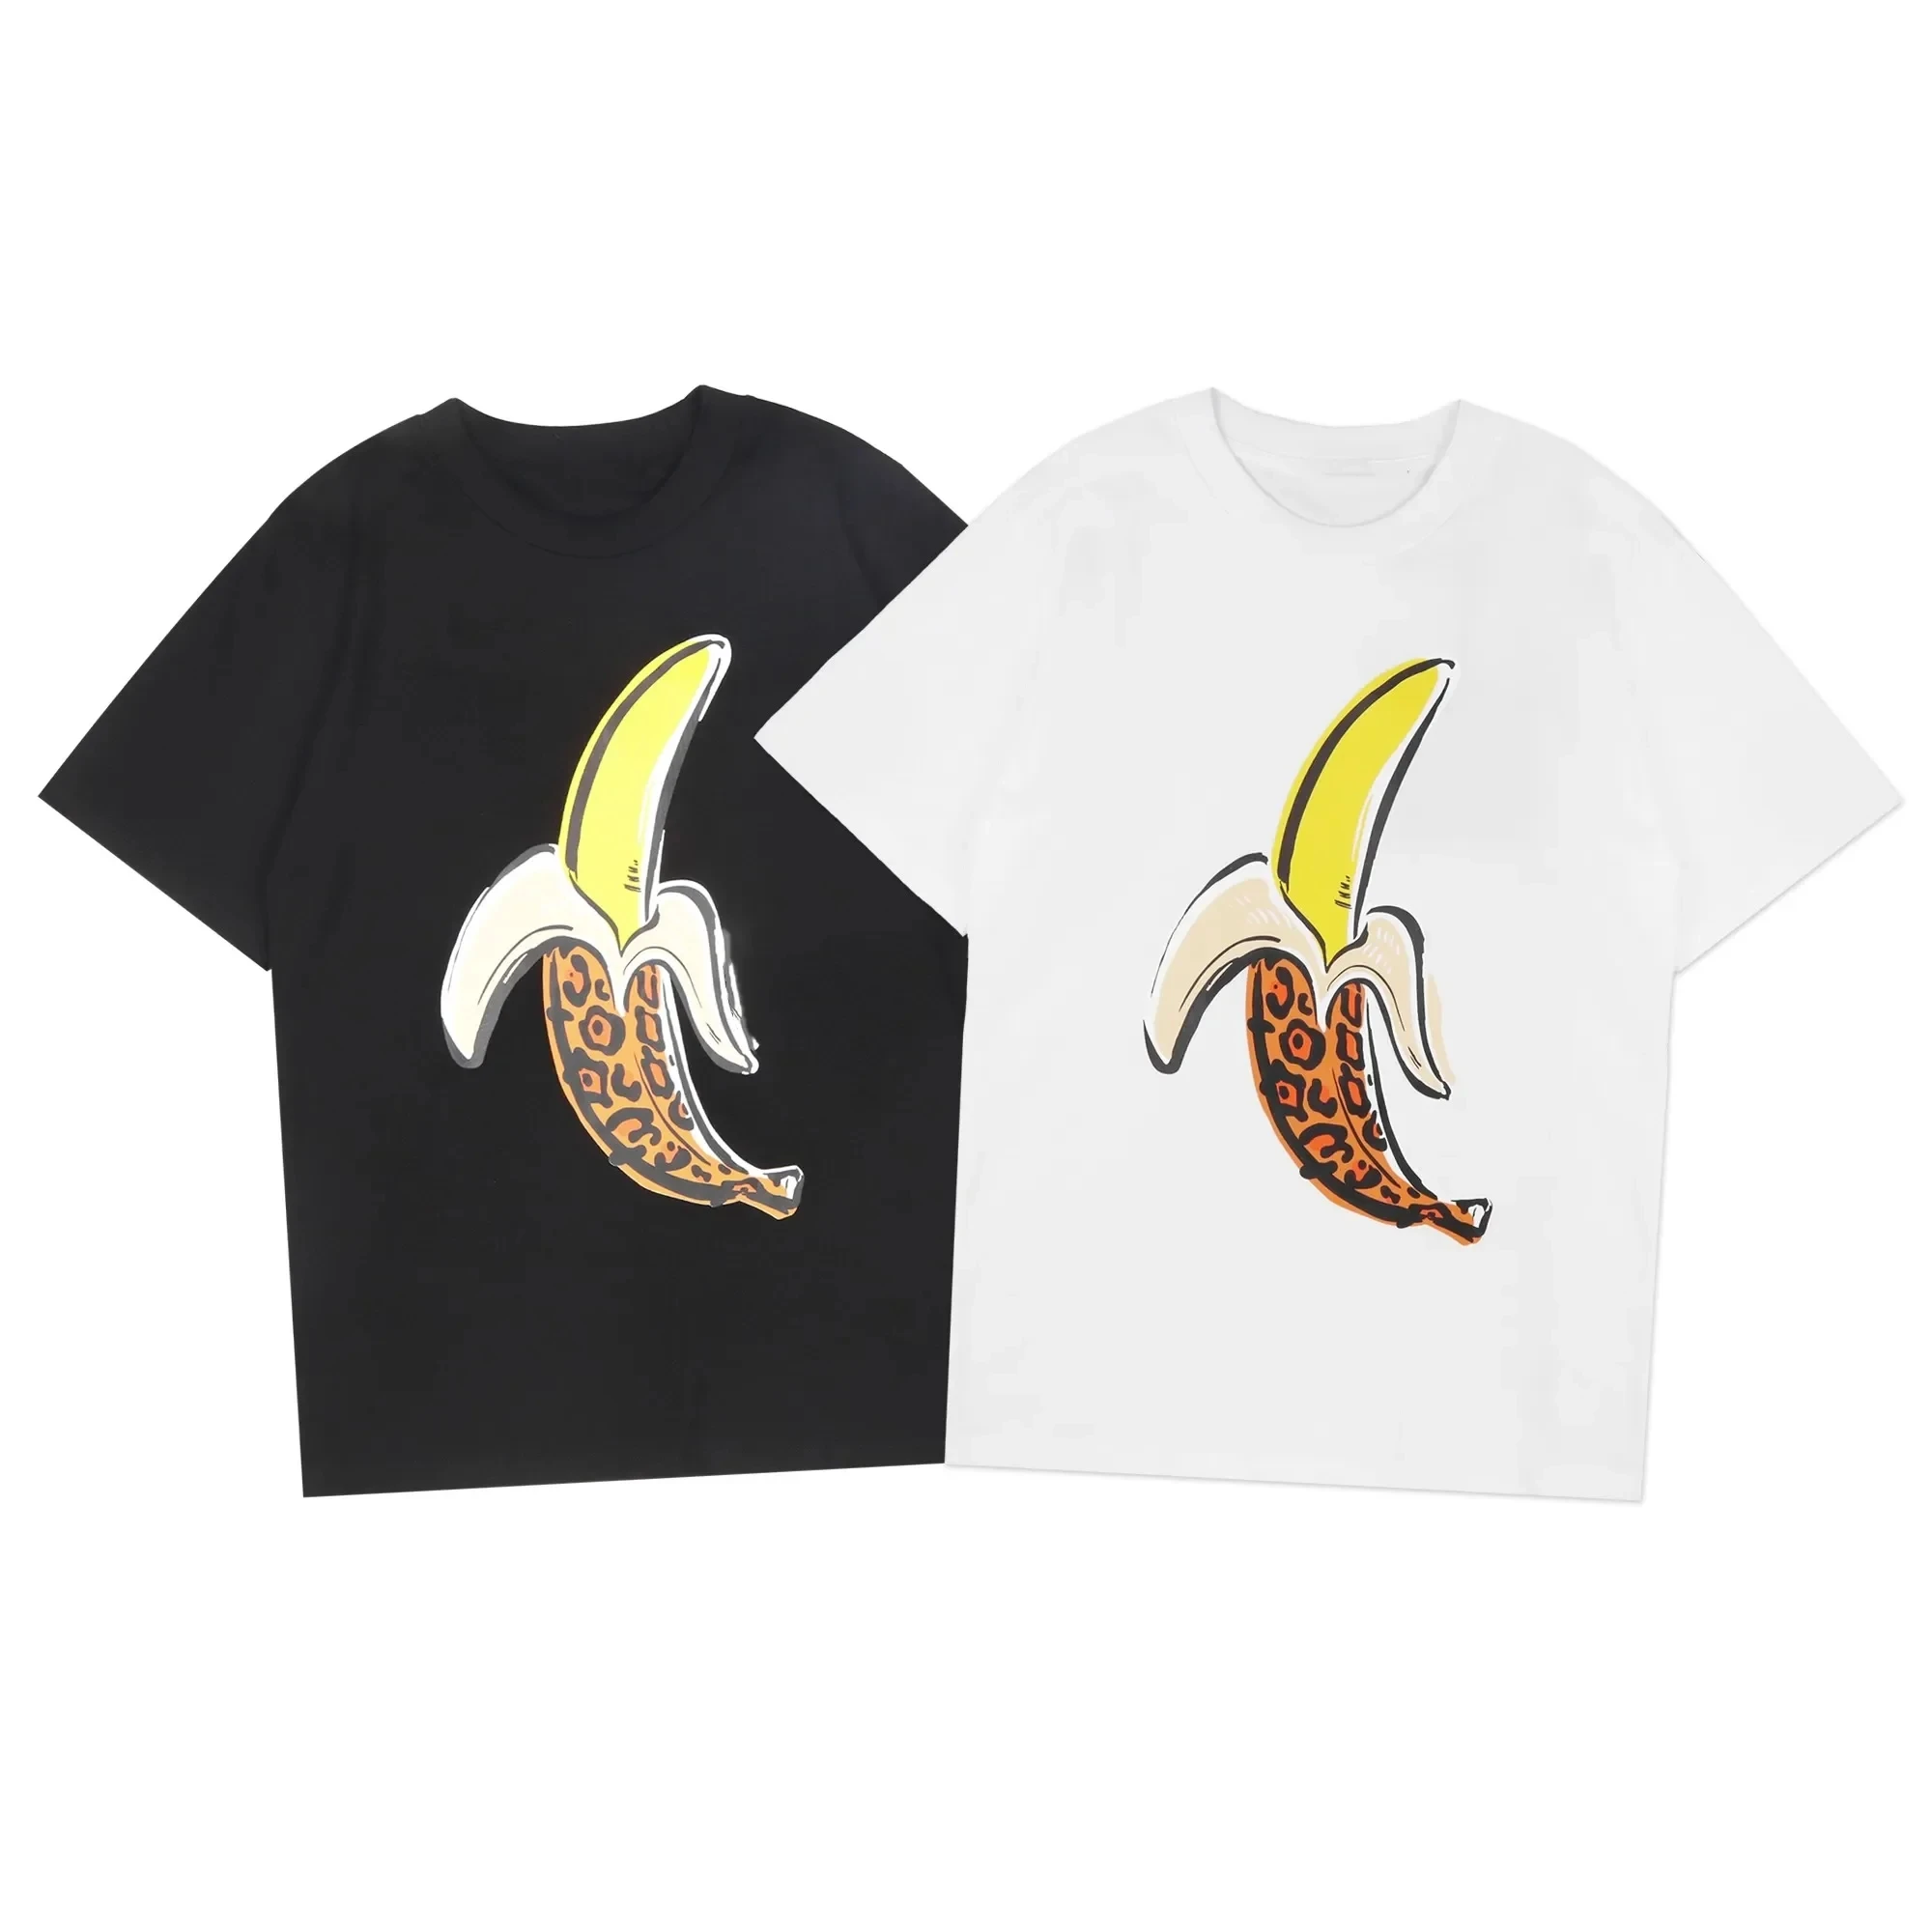 Футболки Angel для мужчин и женщин, футболки с короткими рукавами, футболки оверсайз, банановые молодежные пары, подарок Изображение 4